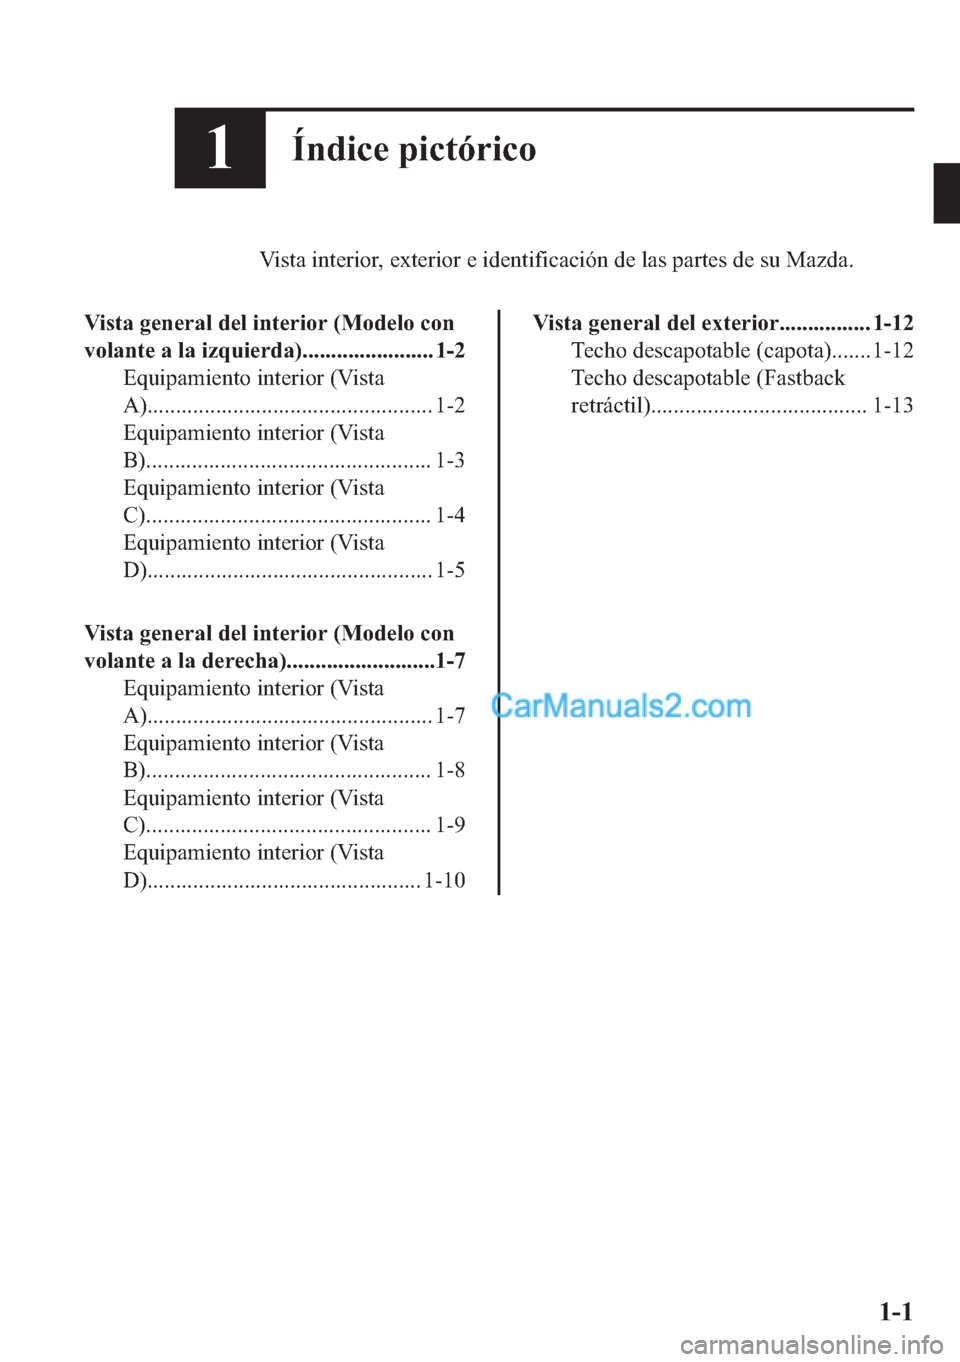 MAZDA MODEL MX-5 2017  Manual del propietario (in Spanish)  ��Ë�Q�G�L�F�H��S�L�F�W�y�U�L�F�R
�9�L�V�W�D��L�Q�W�H�U�L�R�U���H�[�W�H�U�L�R�U��H��L�G�H�Q�W�L�I�L�F�D�F�L�y�Q��G�H��O�D�V��S�D�U�W�H�V��G�H��V�X��0�D�]�G�D�
�9�L�V�W�D��J�H�Q�H�U�D�O�